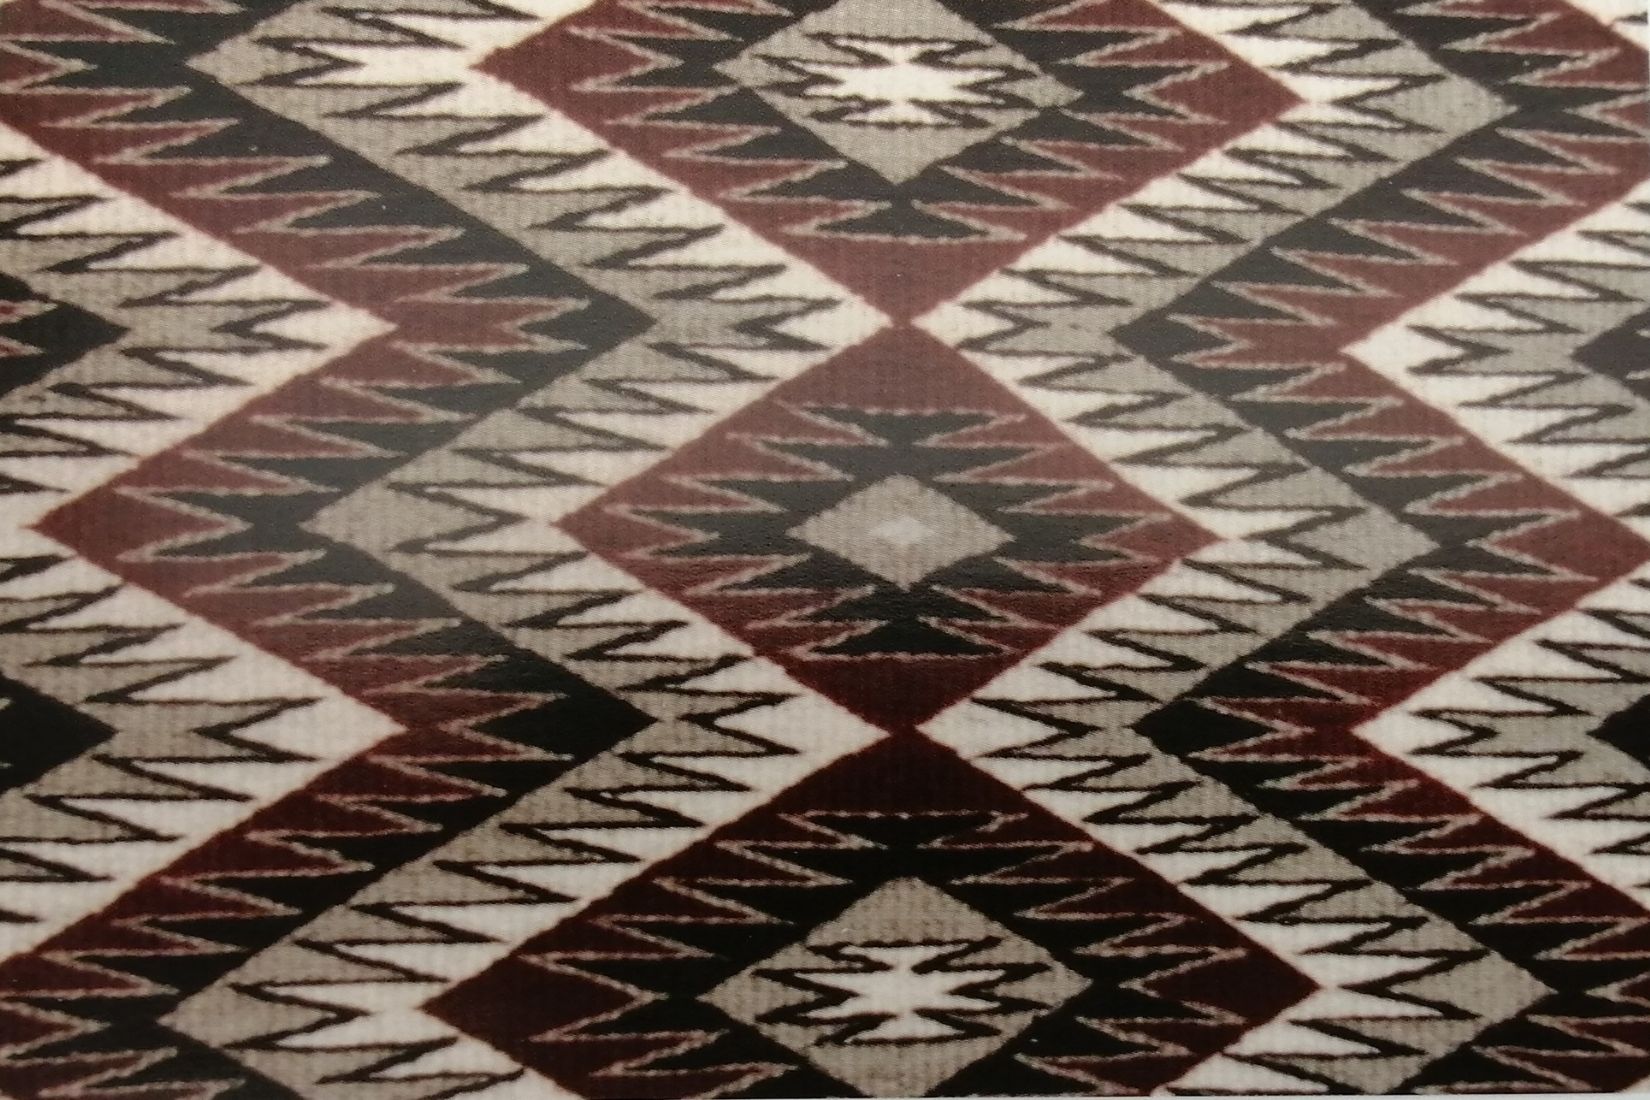 11. Pagina 81 detalle de sarape navajo Arizona tapiceria urdimbre algodón trama lana Col. Museo del sarape y trajes mexicanos